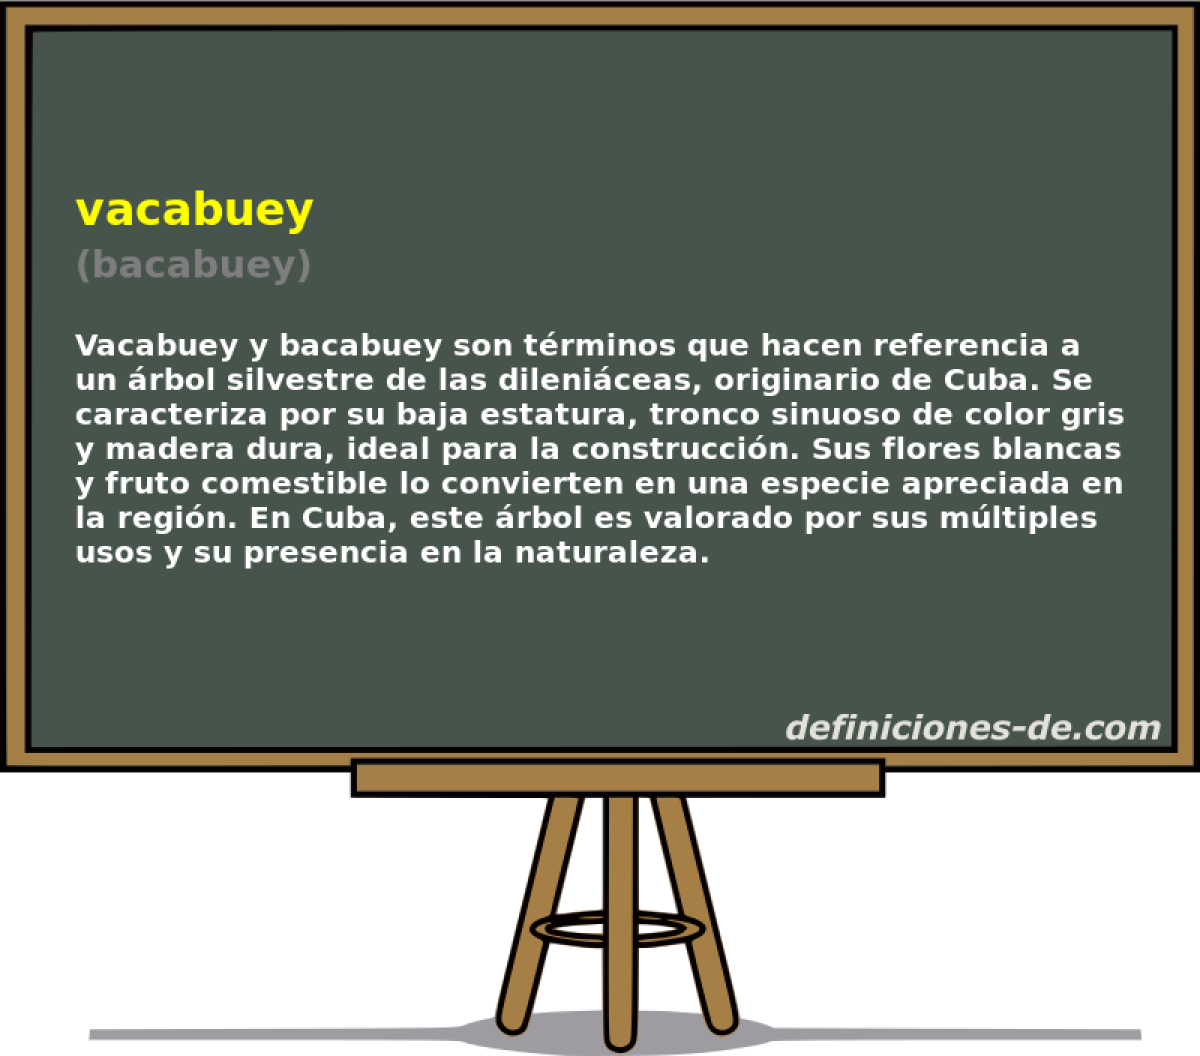 vacabuey (bacabuey)